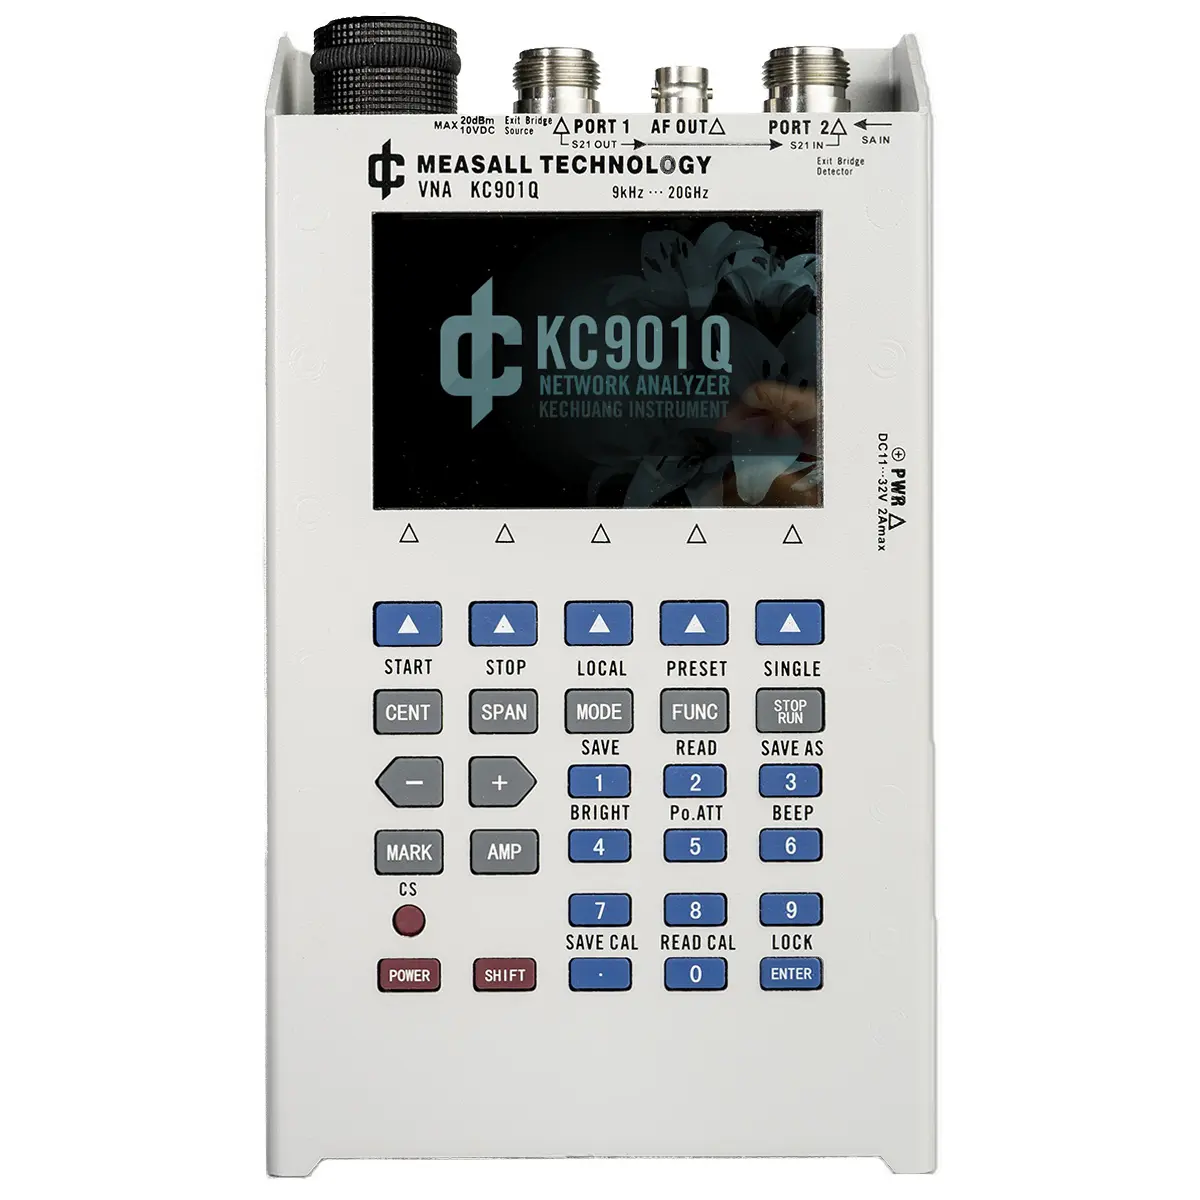 Kc901q 20ghz telemóvel elétrico portátil ethernet vetor rf vetor analisador da rede para medições